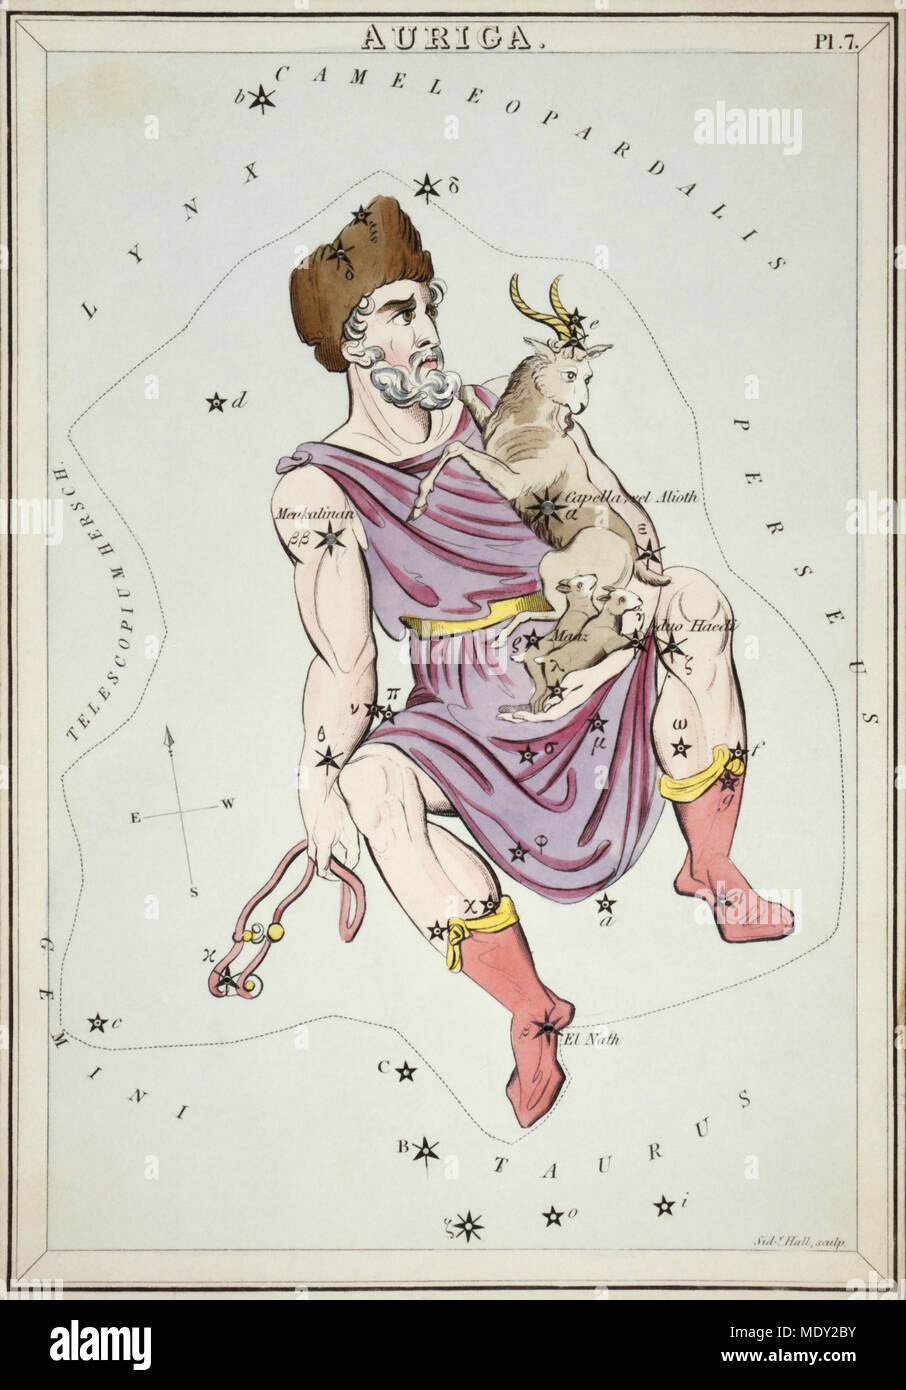 Auriga. Karte Nr. 7 von Urania's Mirror, oder einen Blick auf den Himmel, eines der 32 astronomischen Star Chart Karten von Sidney Hall graviert und publshed 1824. Stockfoto